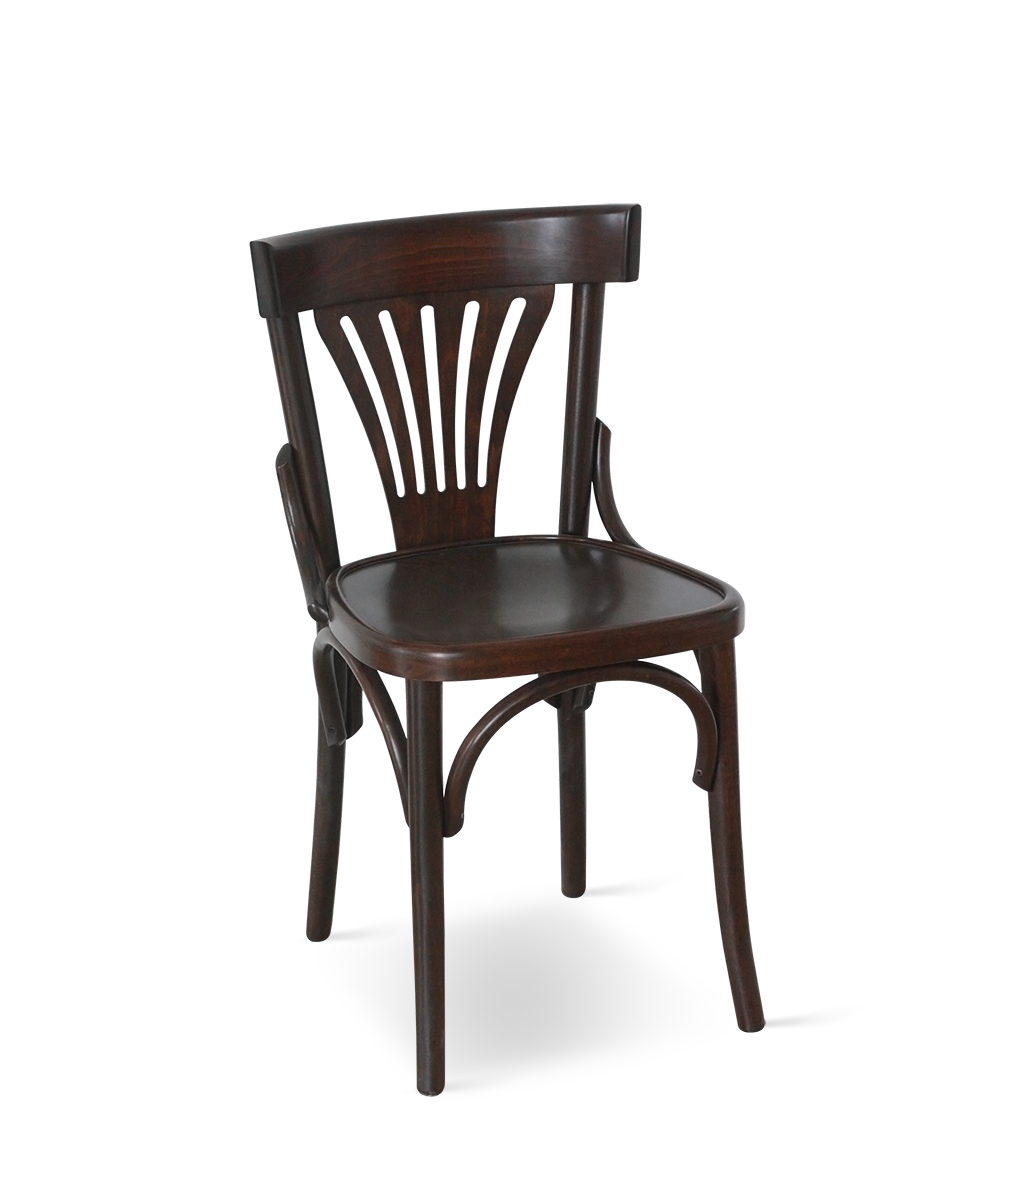 792 Thonet chair